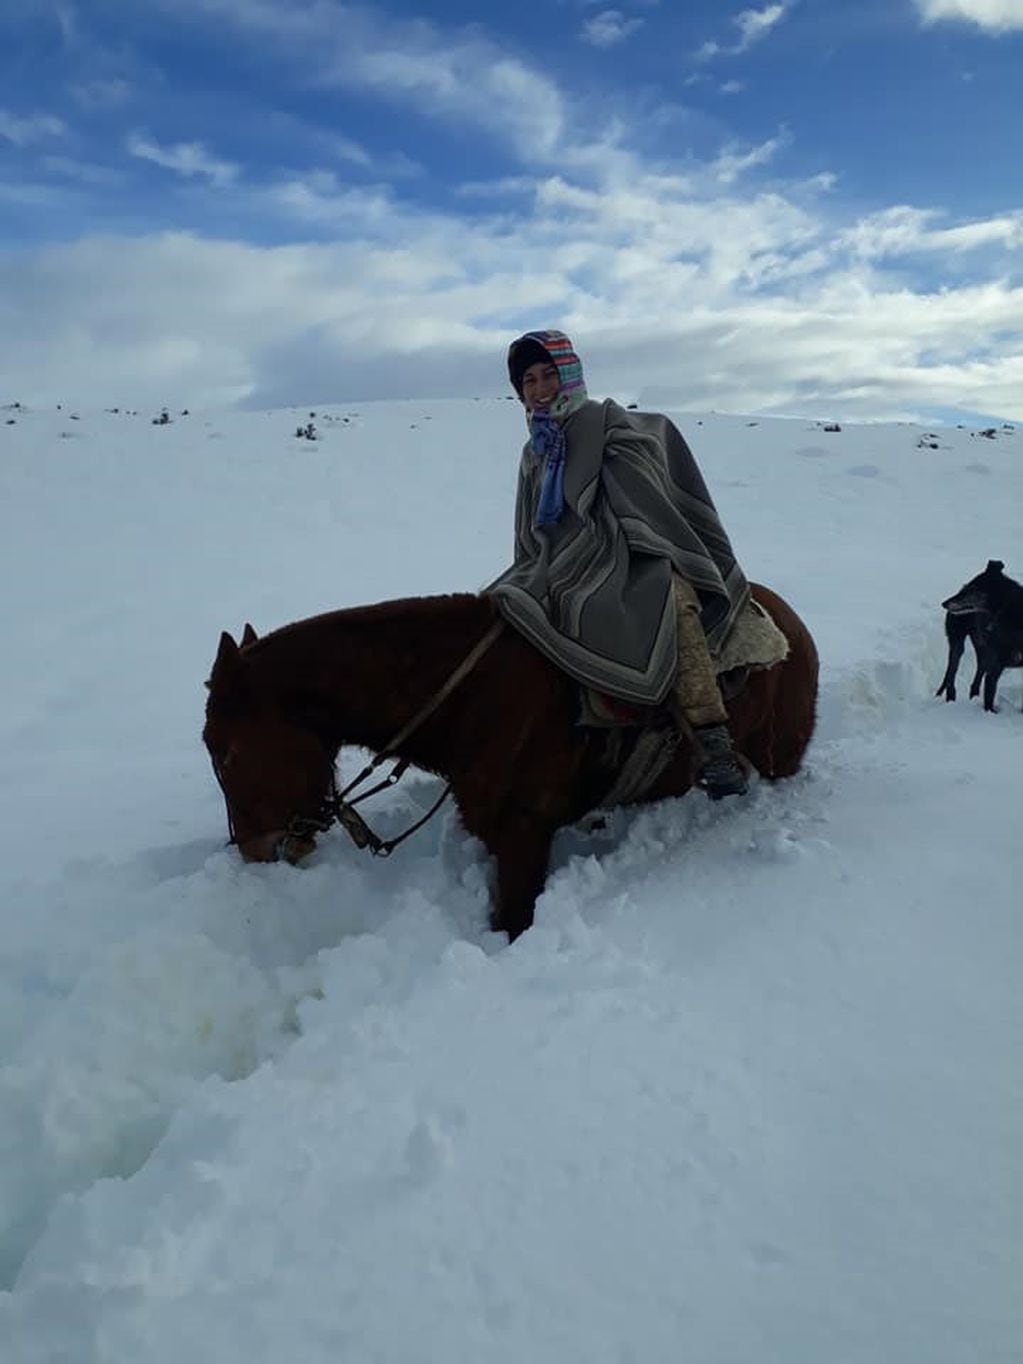 Personal sanitario recorren kilómetros sobre la nieve a caballo para trabajar en zonas rurales